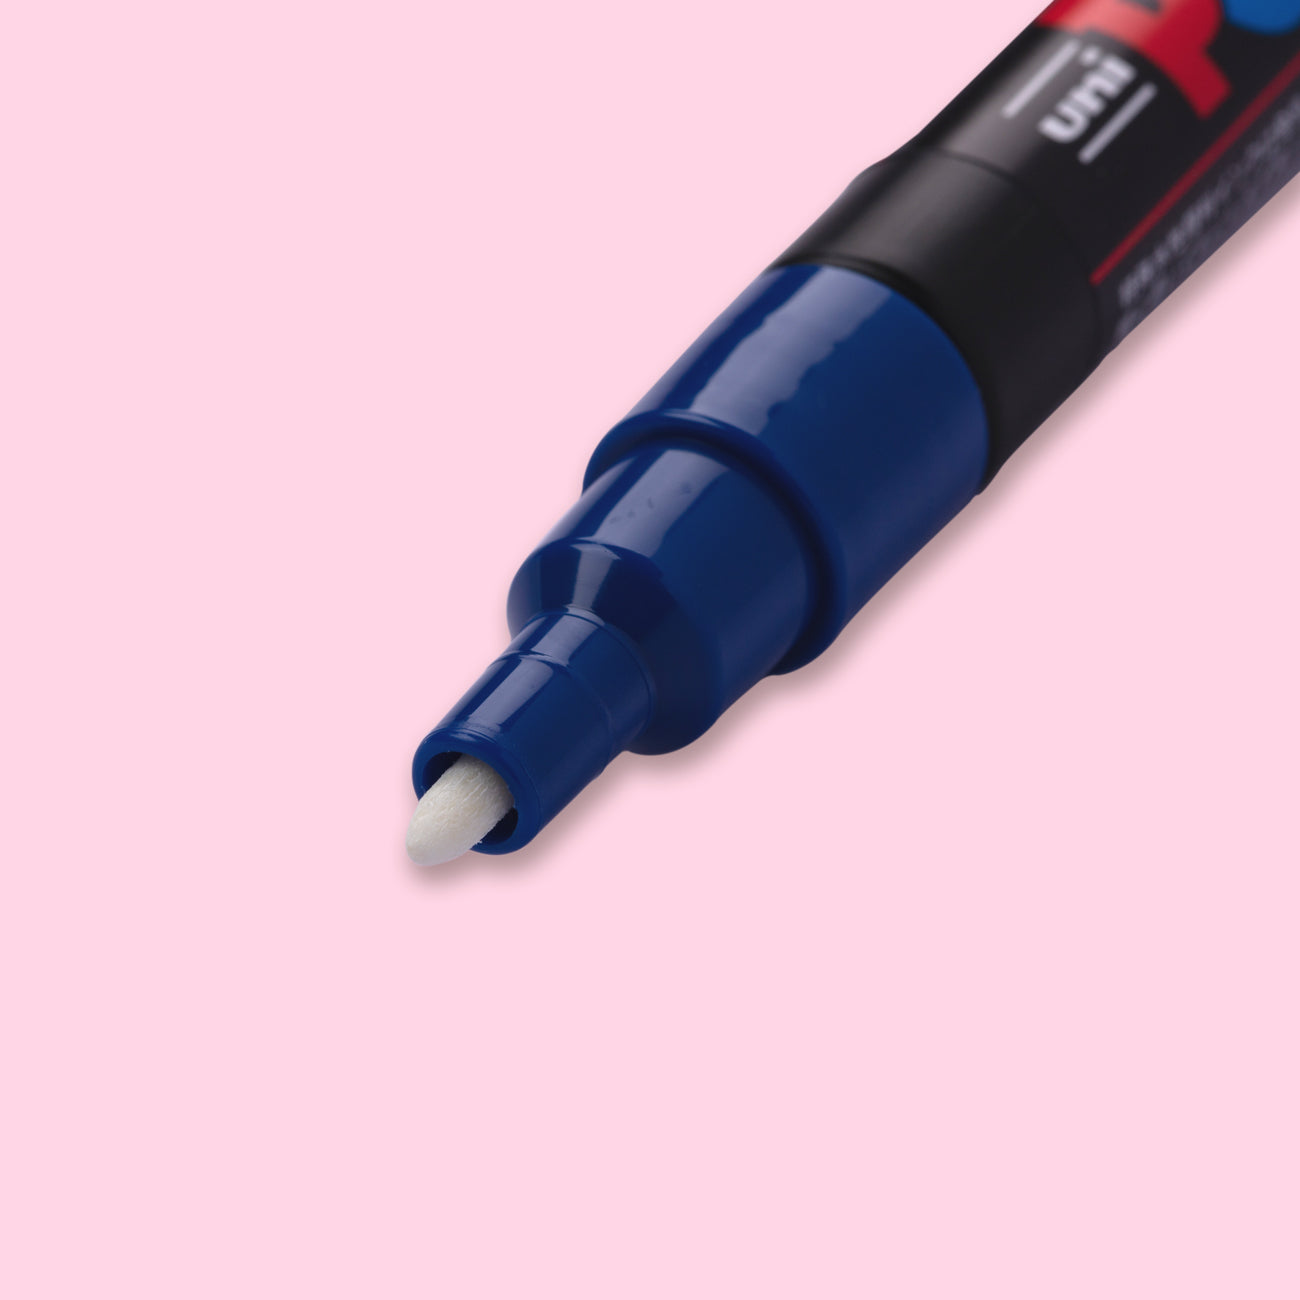 Uni Posca Colored Pencil- Blue